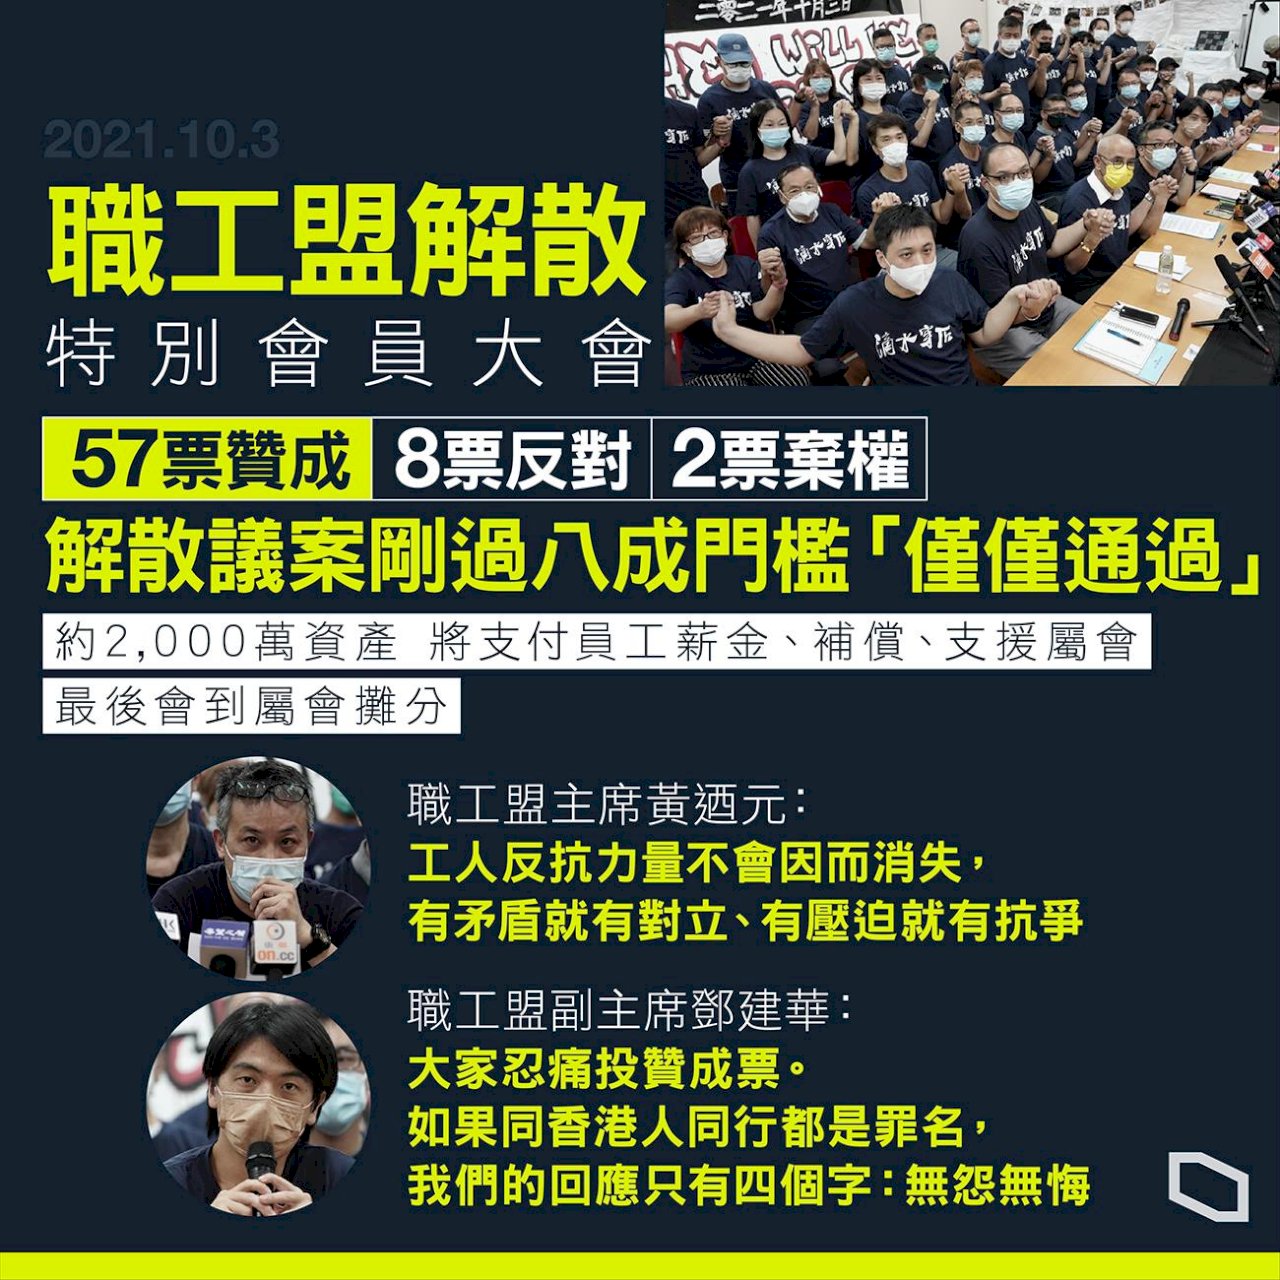 香港職工盟通過表決解散 30年歷史畫下句點